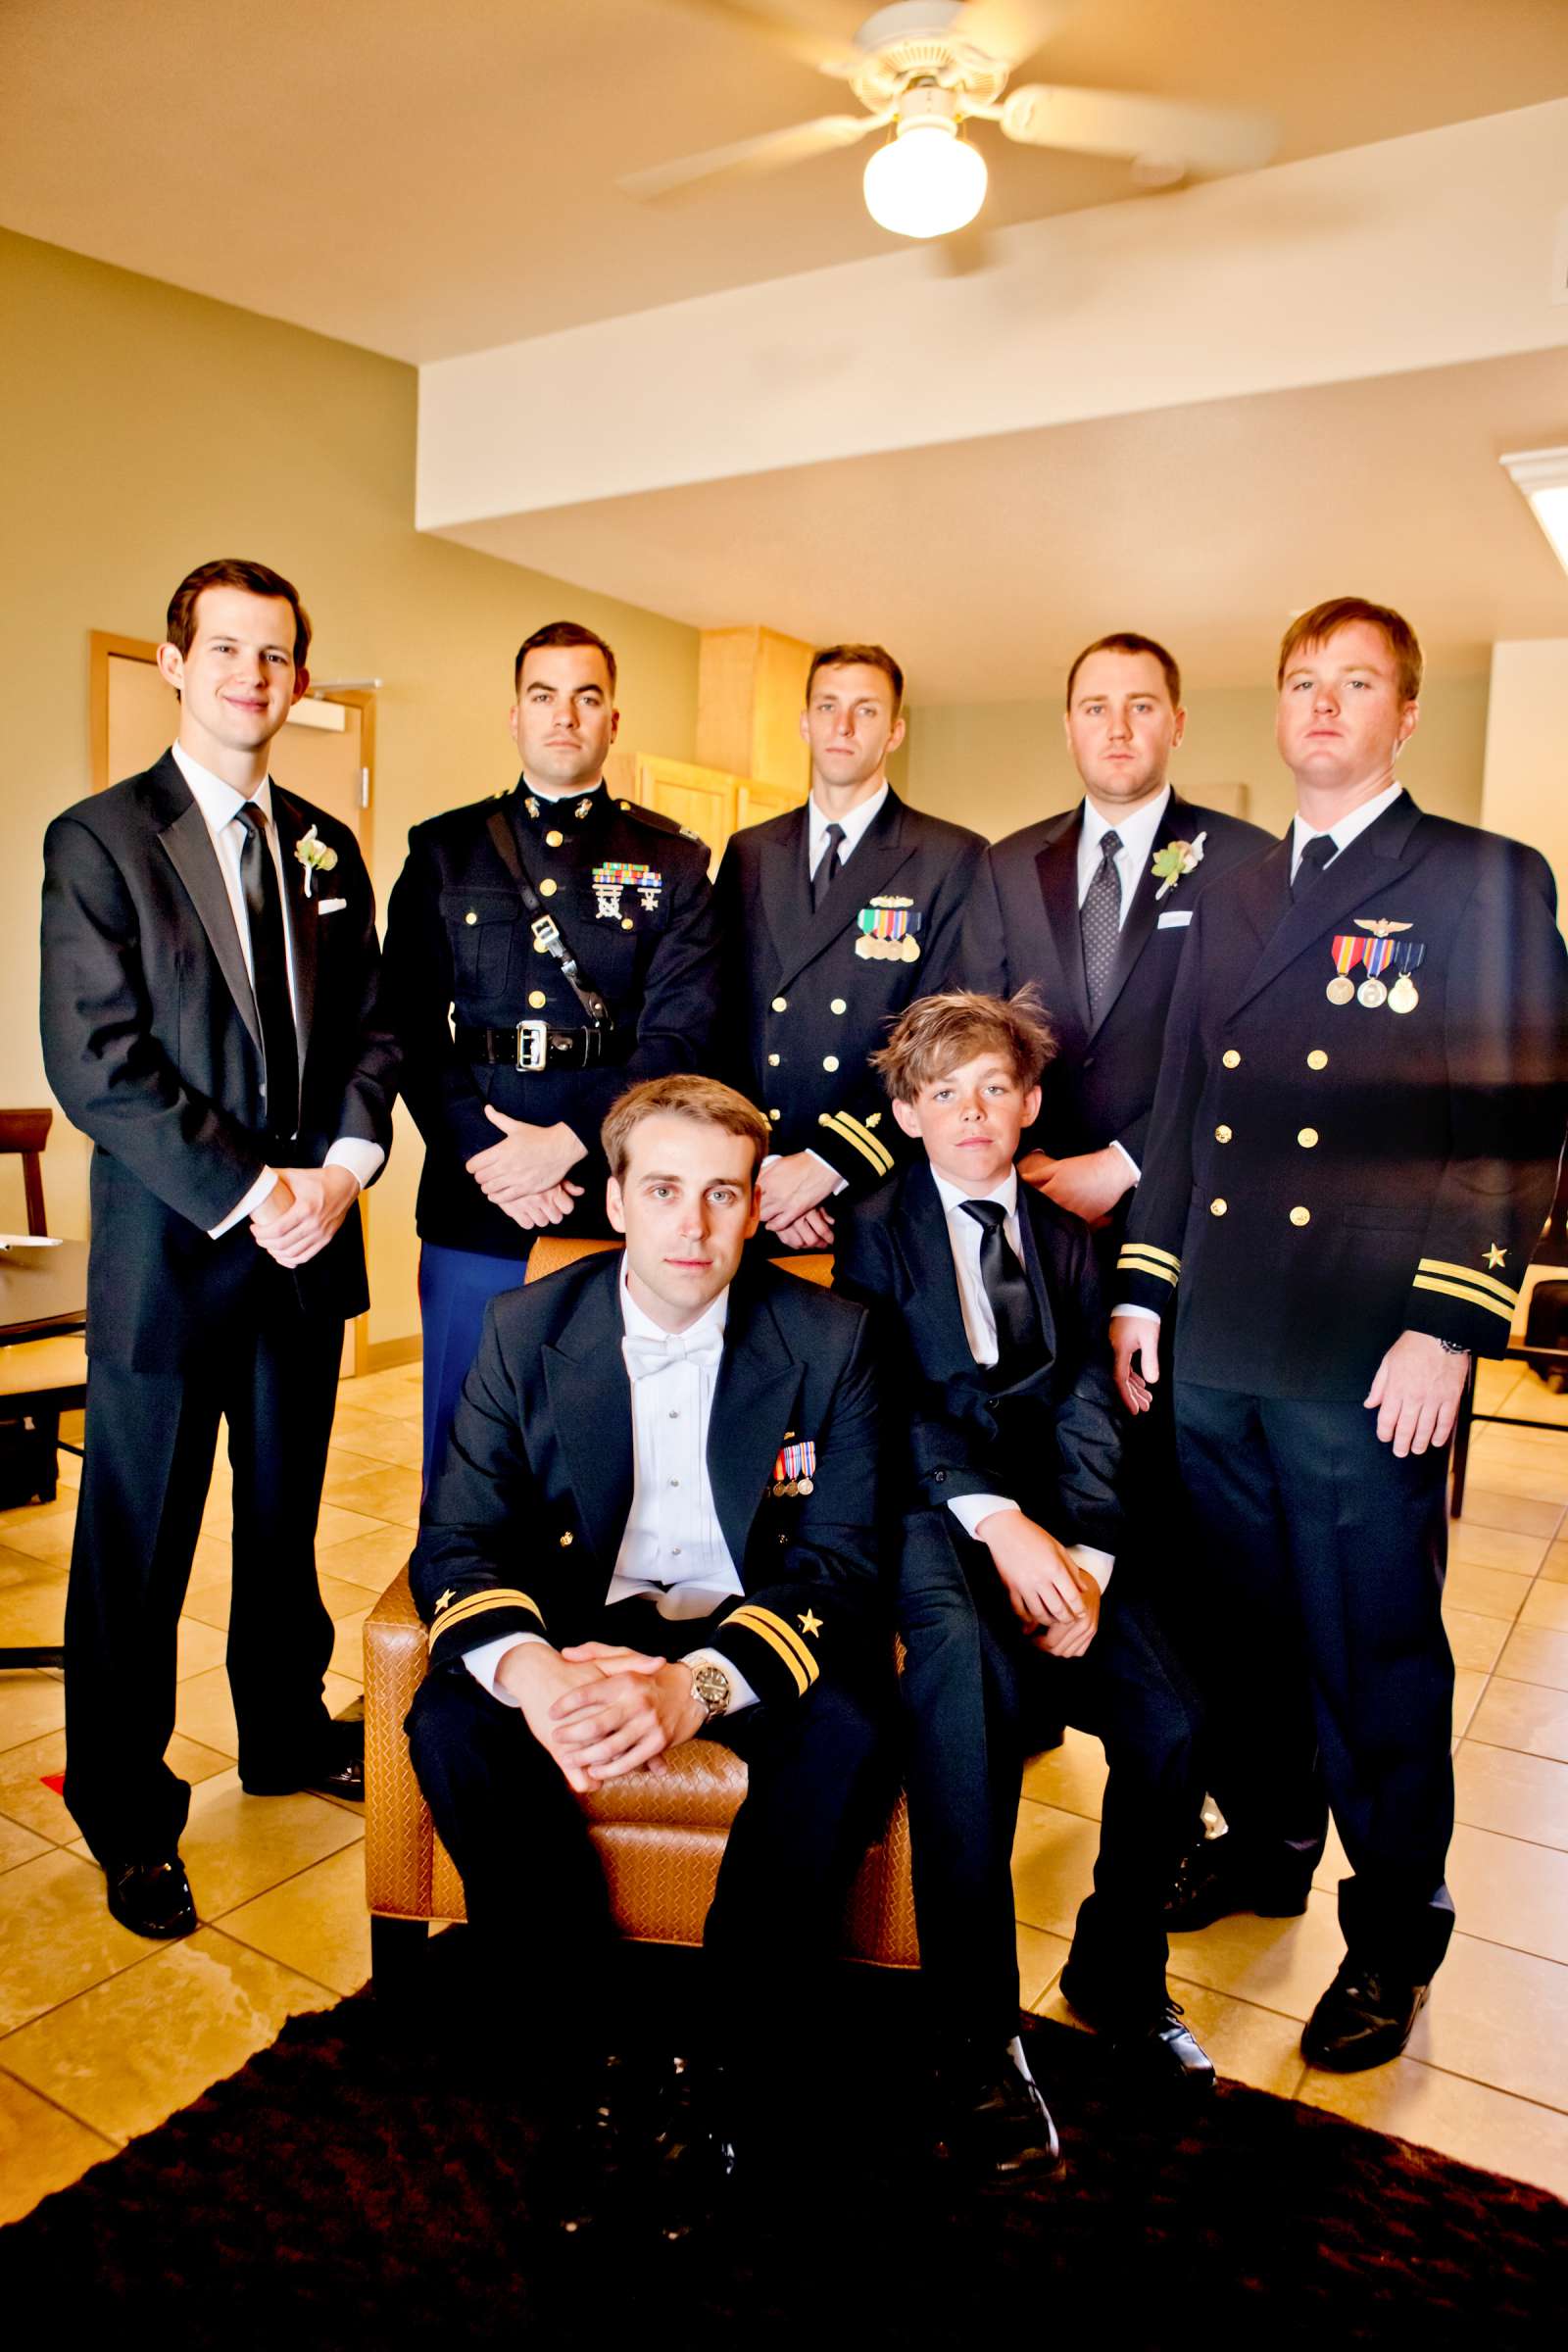 Admiral Kidd Club Wedding coordinated by I Do Weddings, Ashley and Rhett Wedding Photo #358437 by True Photography